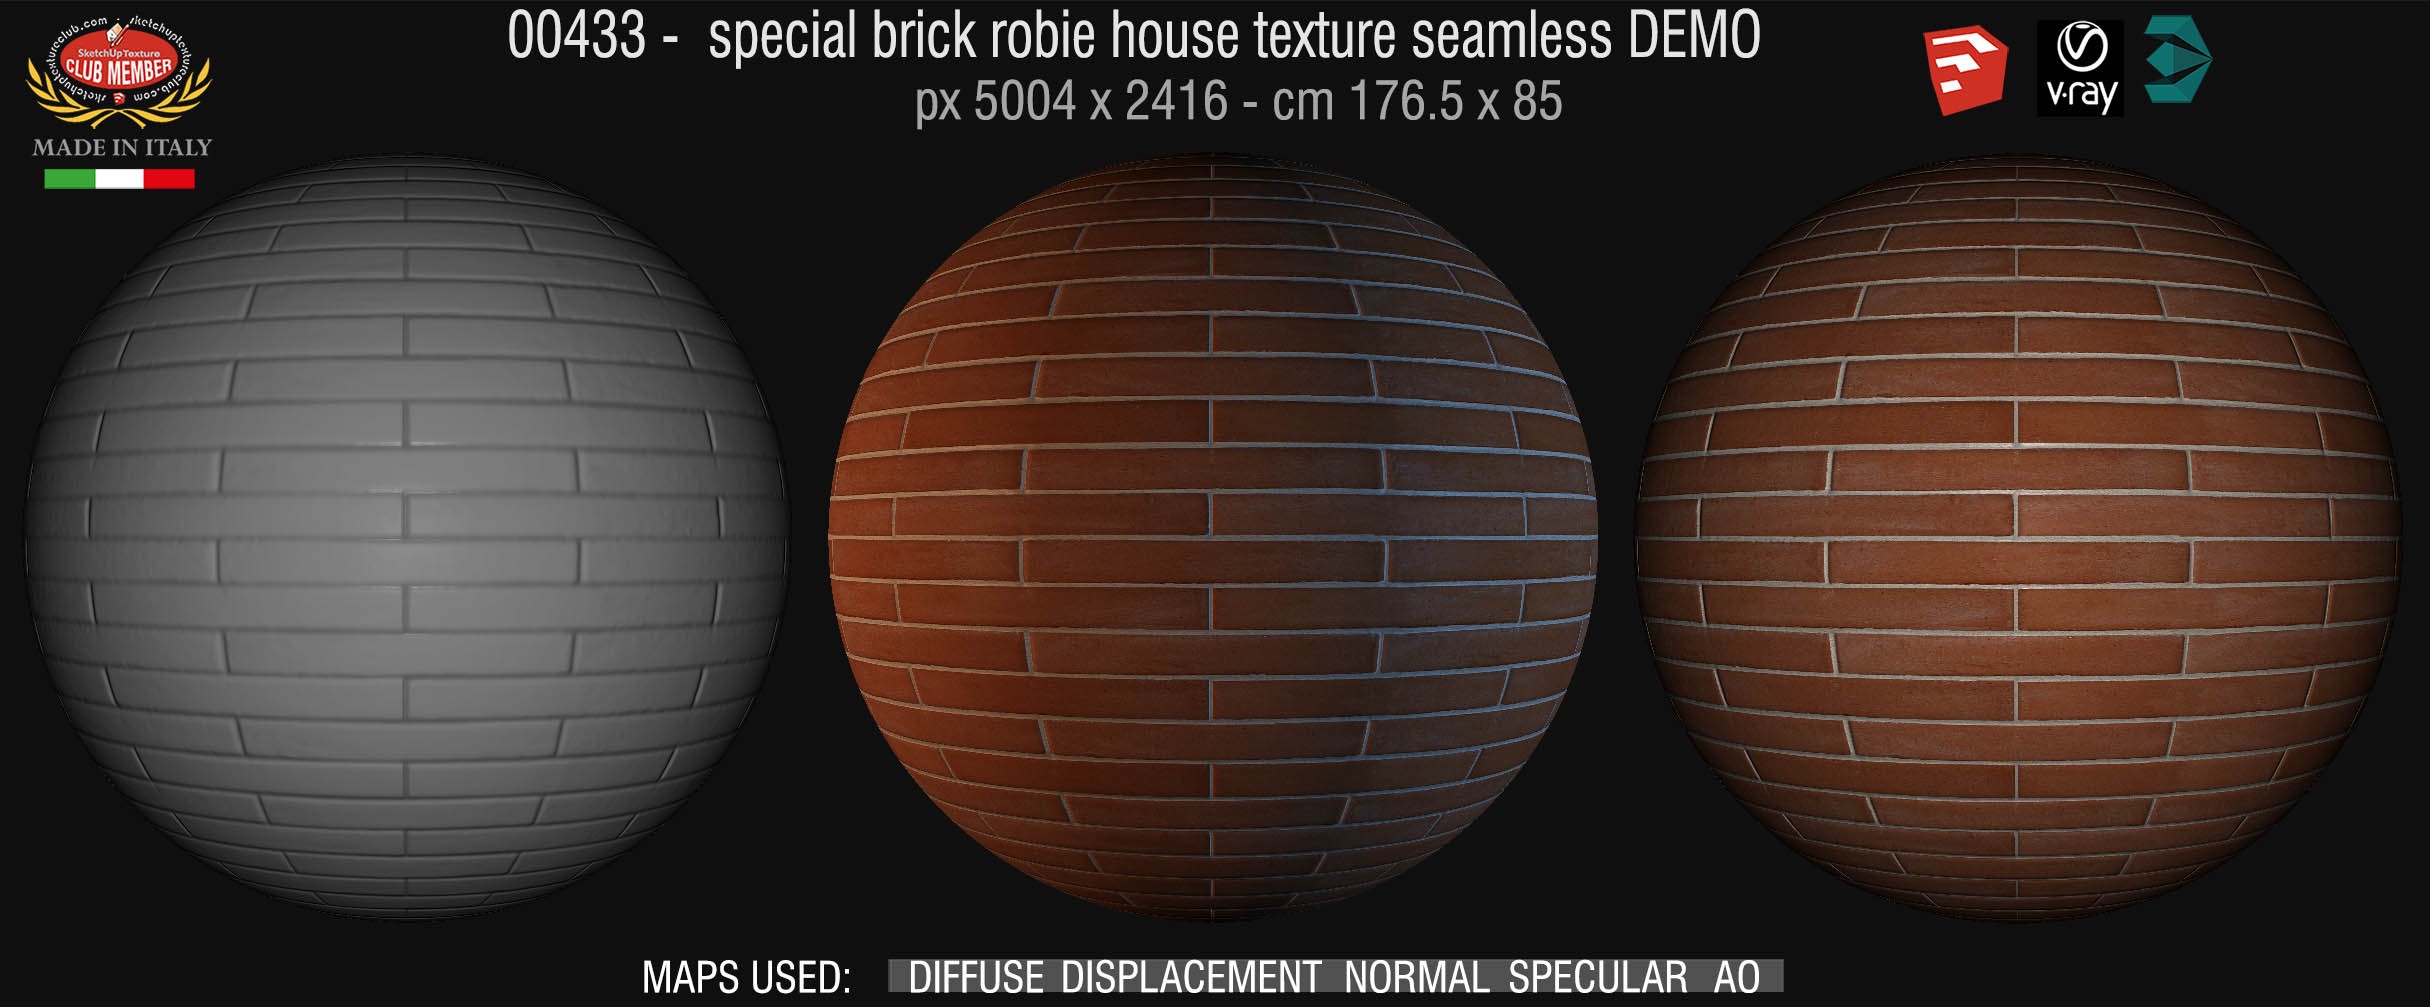 00433 special brick robie house texture seamless + maps DEMO